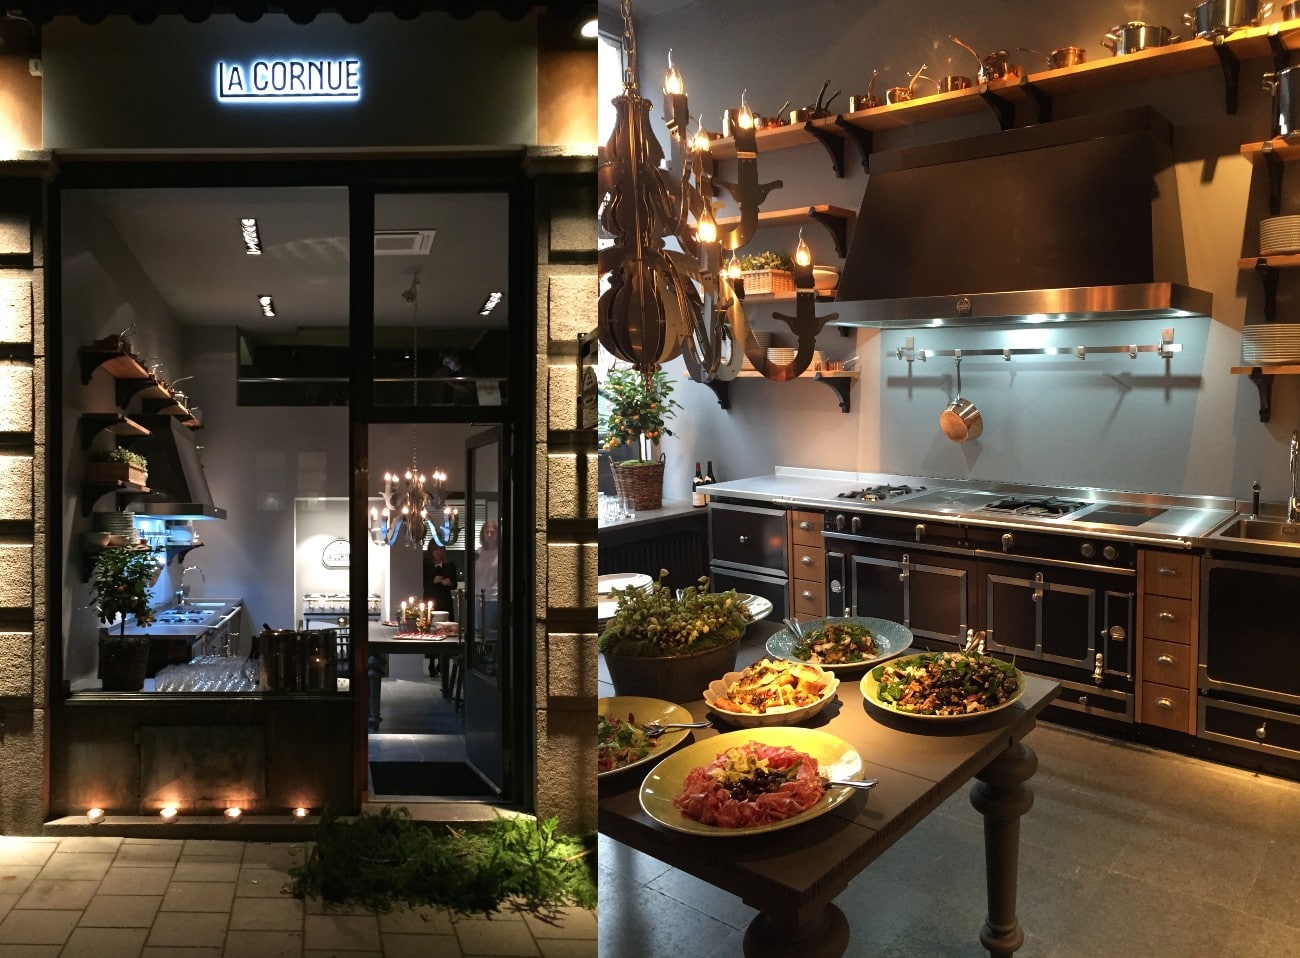 La Cornue köksbutik showroom på Skeppargatan 66, Stockholm. Här visar vi även Sub-zero appliances kyl/frys och vinkyl. 